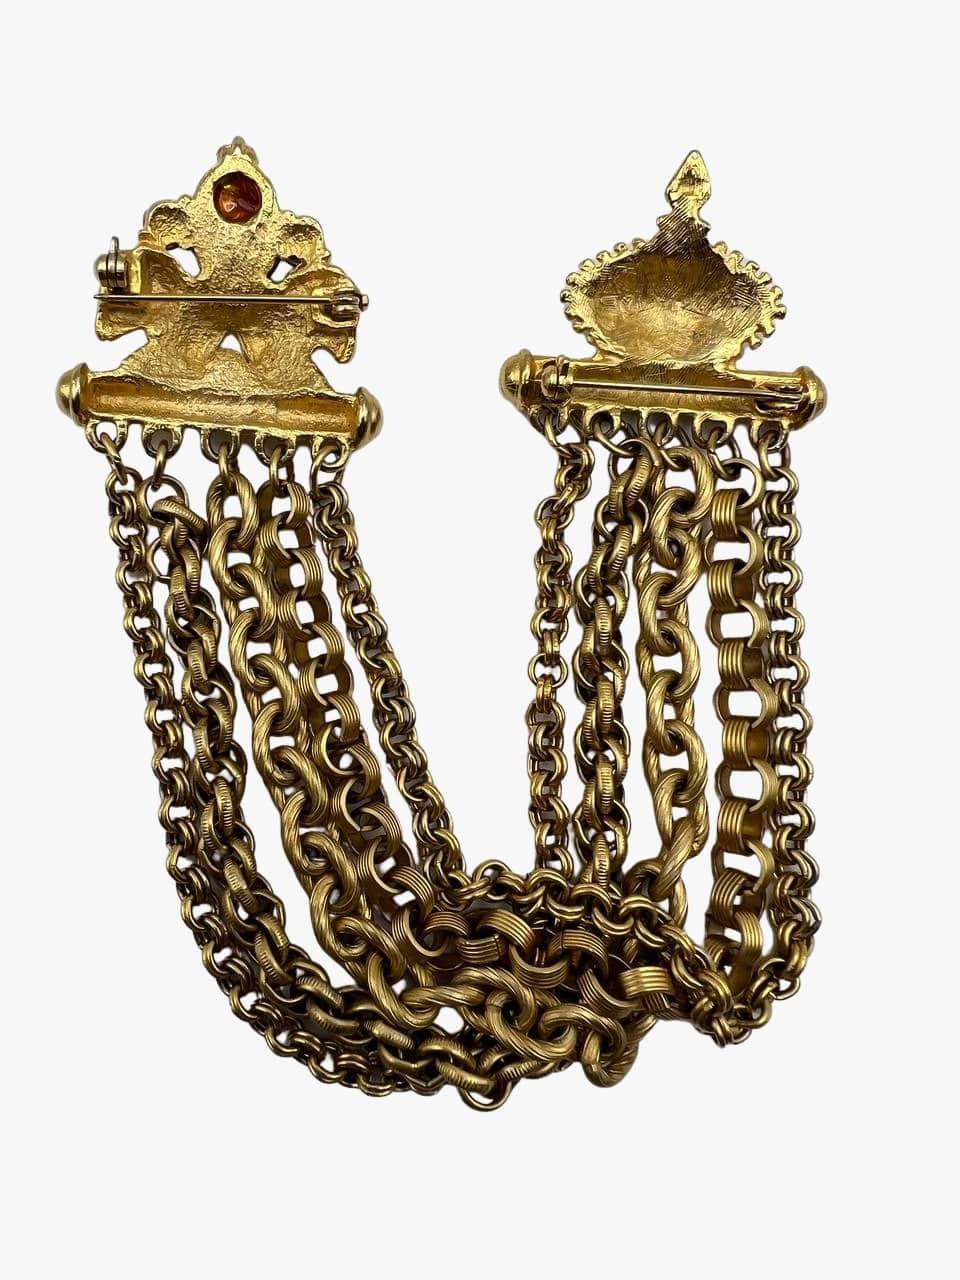 Goldfarbene Halskettenbrosche im Vintage-Stil, bestehend aus 5 verschiedenen Ketten, die auf der einen Seite mit einem kronenförmigen Verschluss und auf der anderen Seite mit Widdern verziert sind. 
Größe:  10 cm Länge in geschlossenem Zustand
3,5